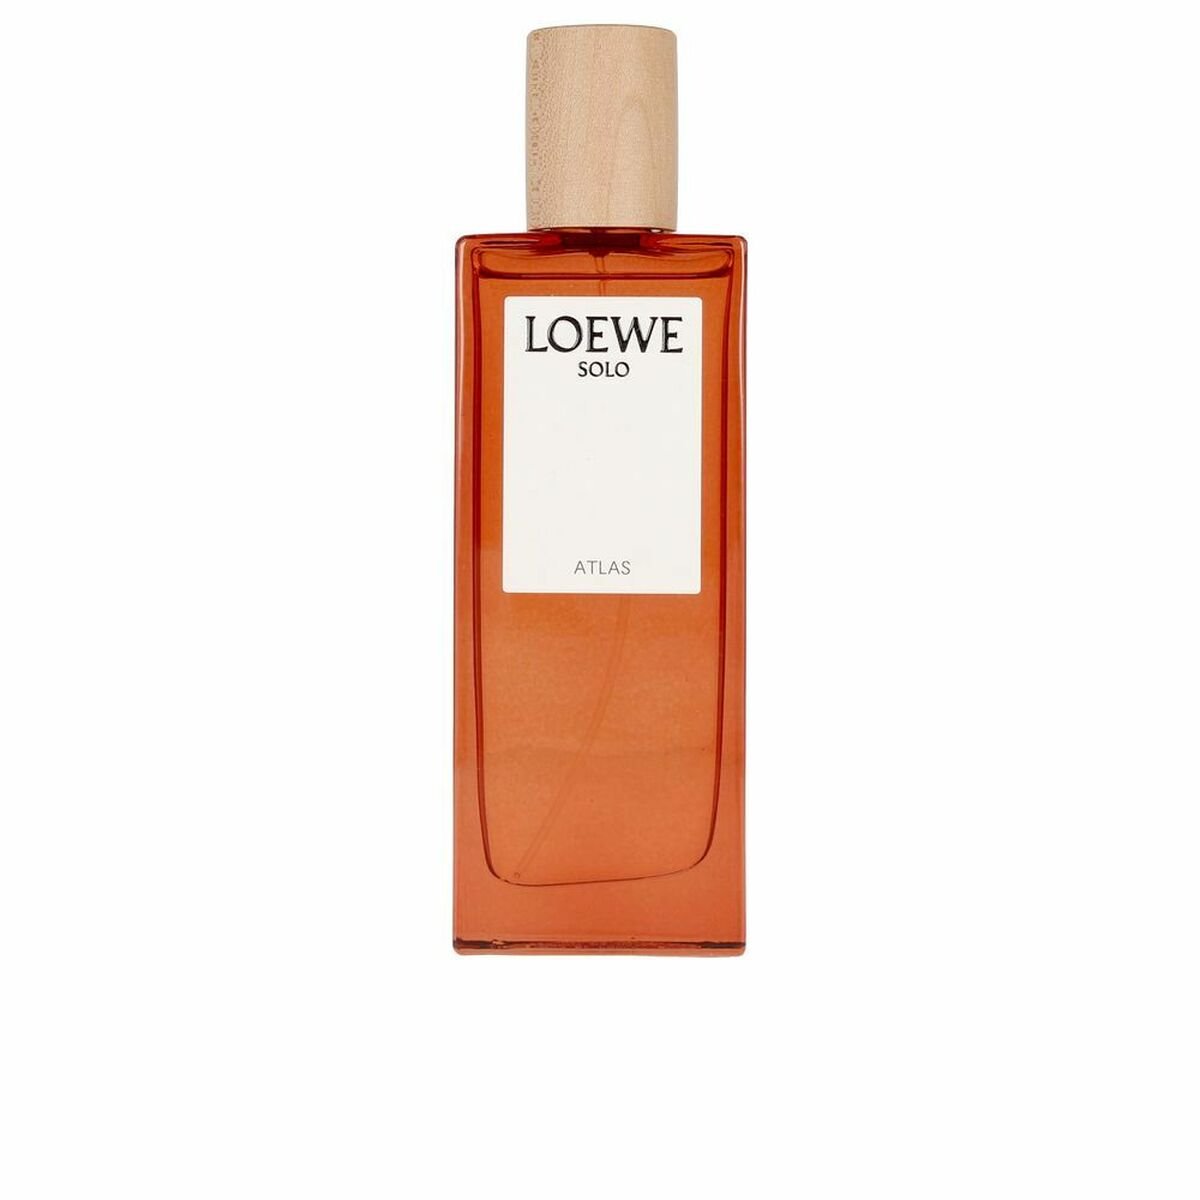 Loewe Solo Atlas woda perfumowana 50ml